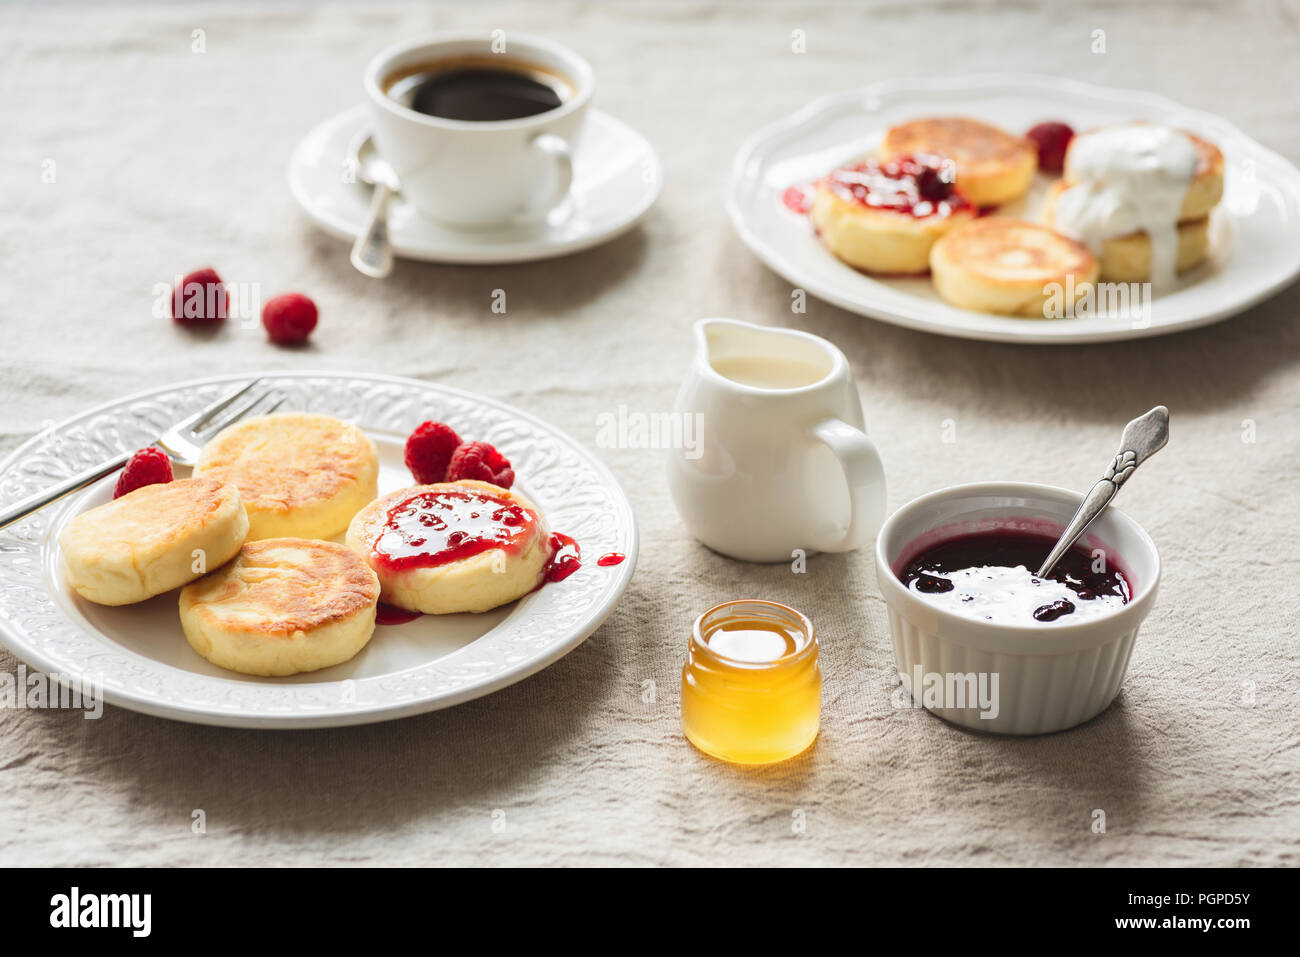 Frühstückstisch mit Quark Krapfen oder Pfannkuchen, Kaffee, Marmelade und Honig. Russische, ukrainische Küche. Gemütliches Frühstück oder comfort food Konzept Stockfoto